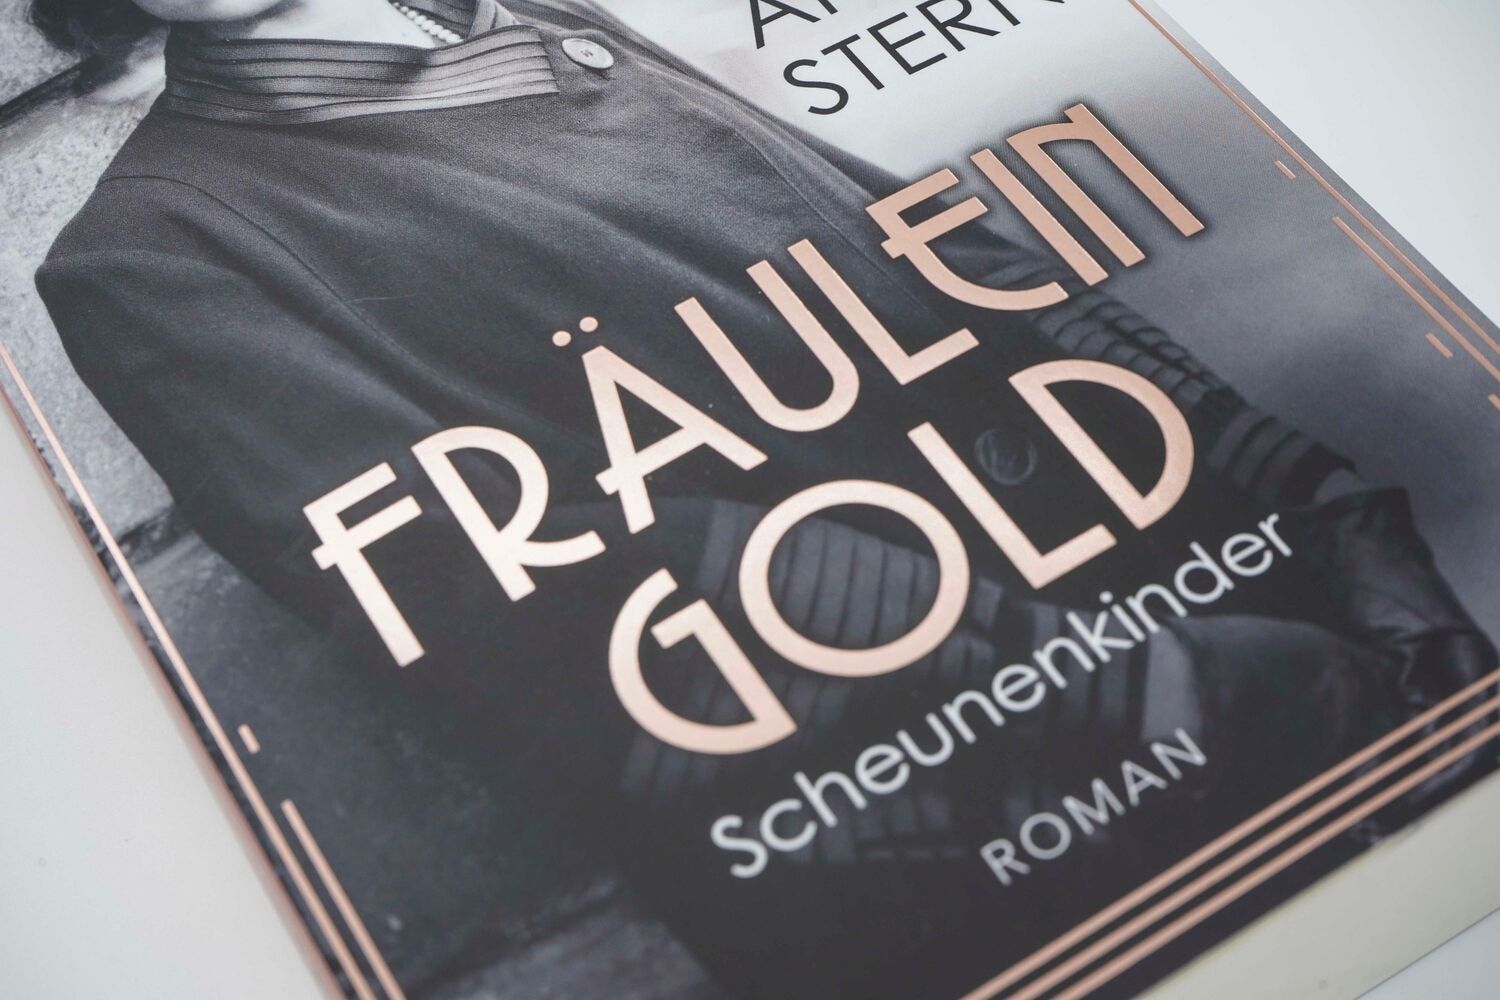 Bild: 9783499004292 | Fräulein Gold: Scheunenkinder | Anne Stern | Taschenbuch | 448 S.